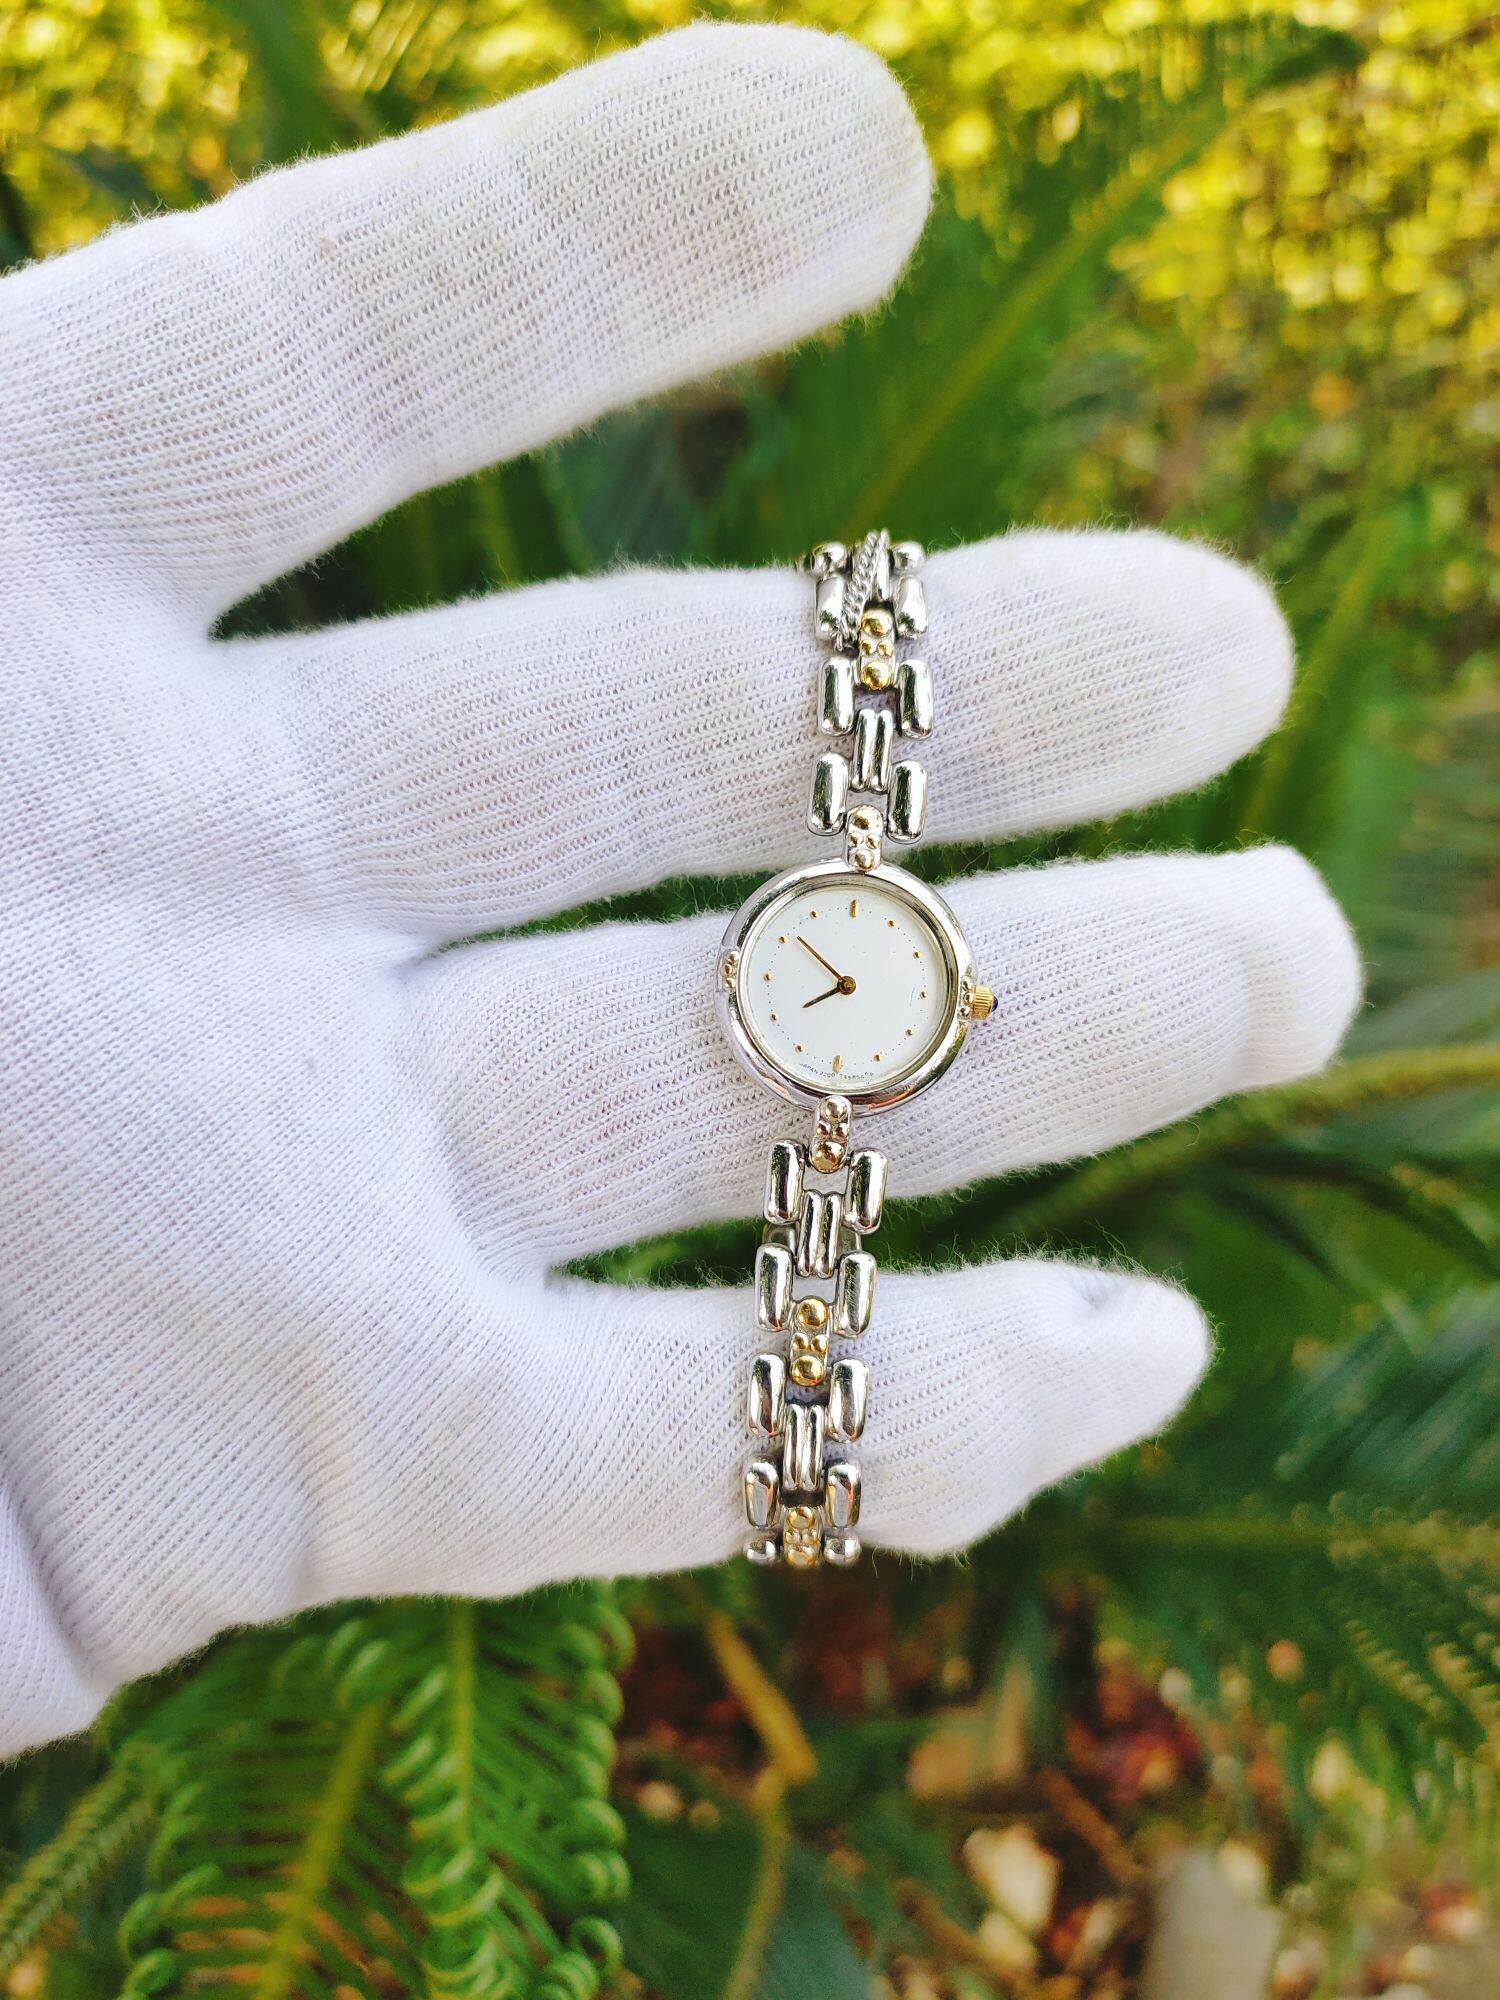 Đồng hồ Citizen lắc nữ Nhật Bản, size 18mm, hình thức đẹp 95%